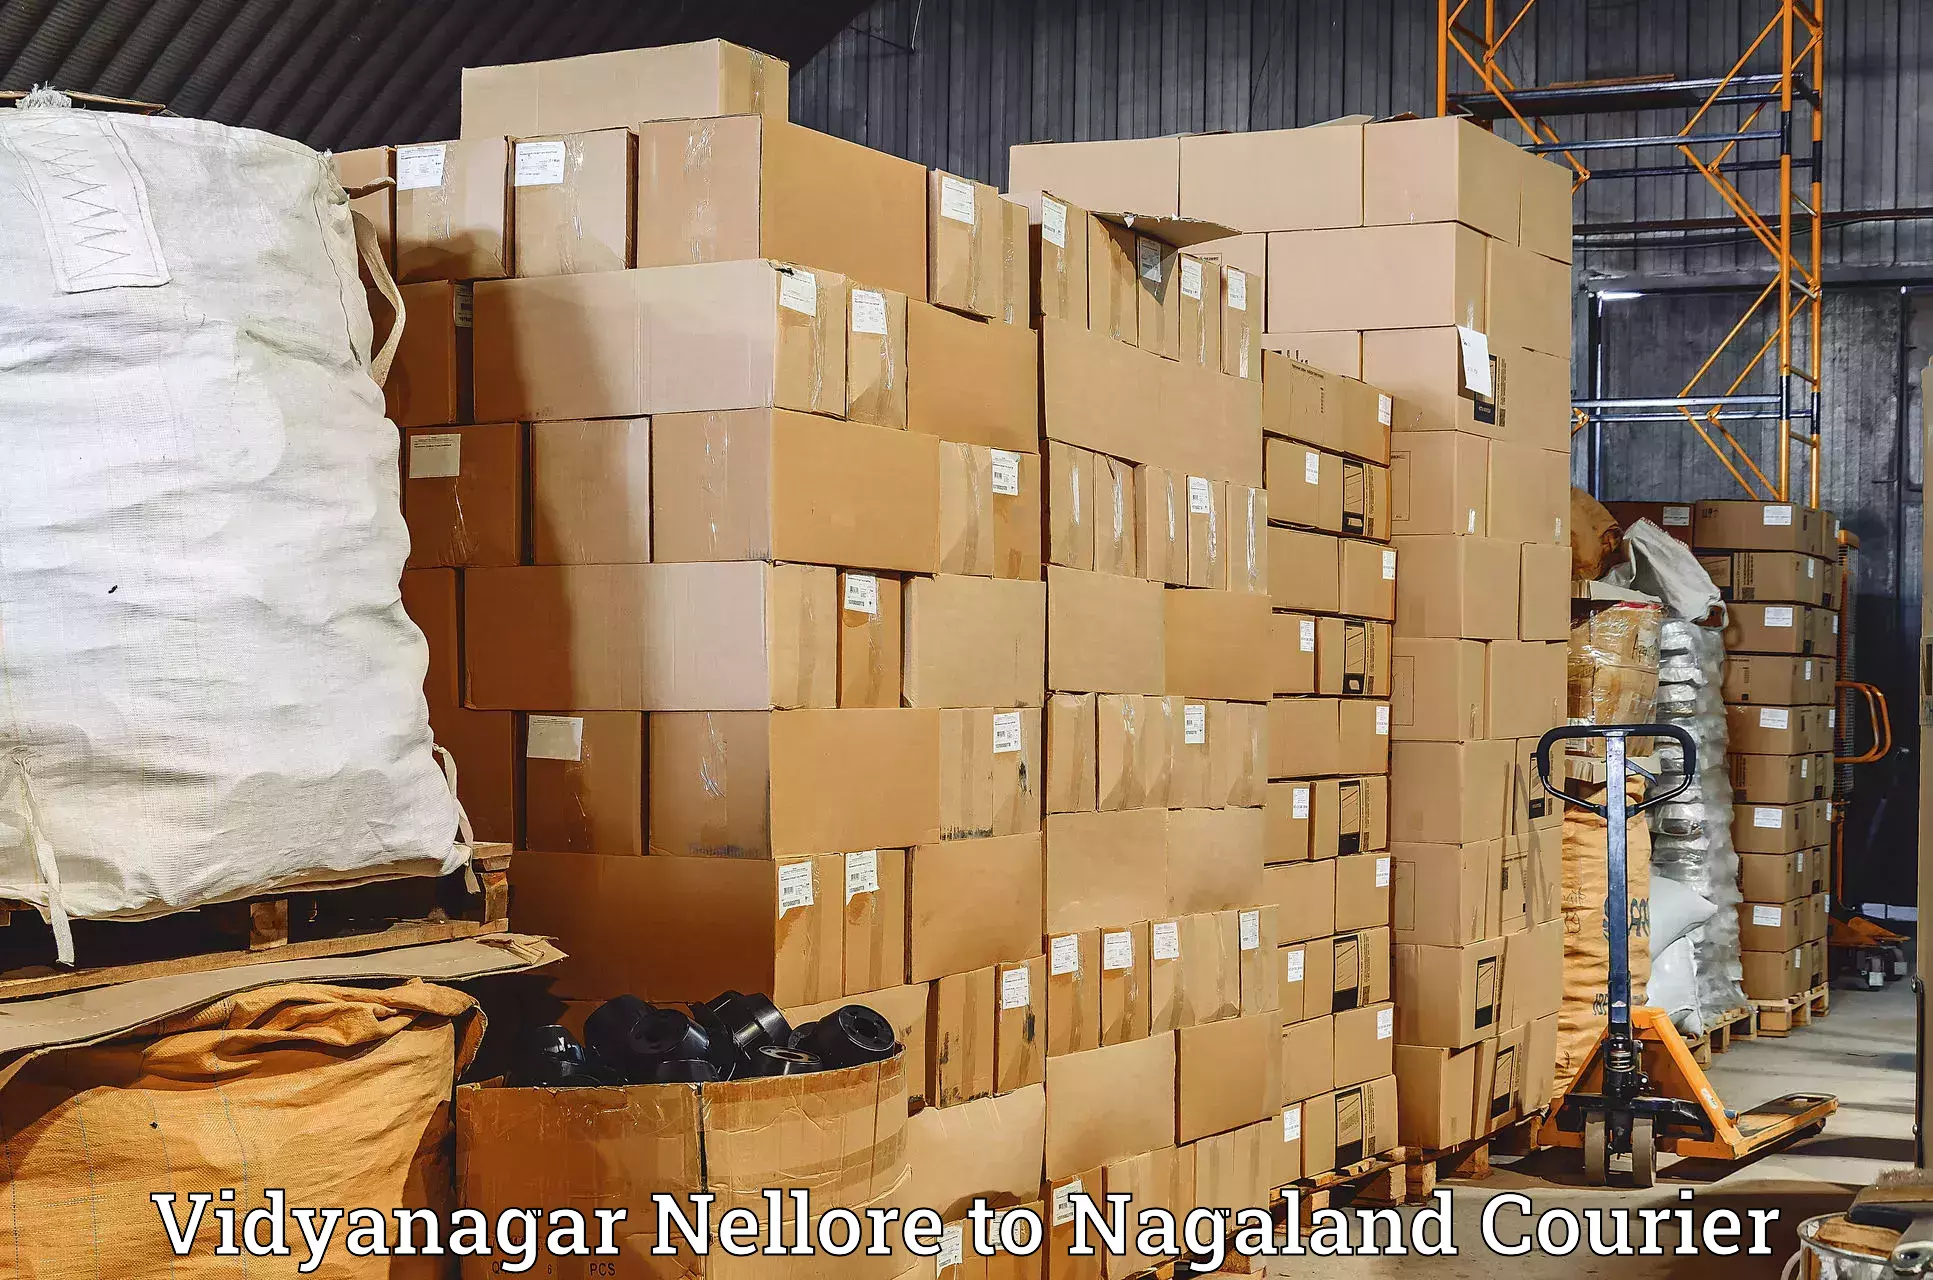 Courier services Vidyanagar Nellore to Nagaland